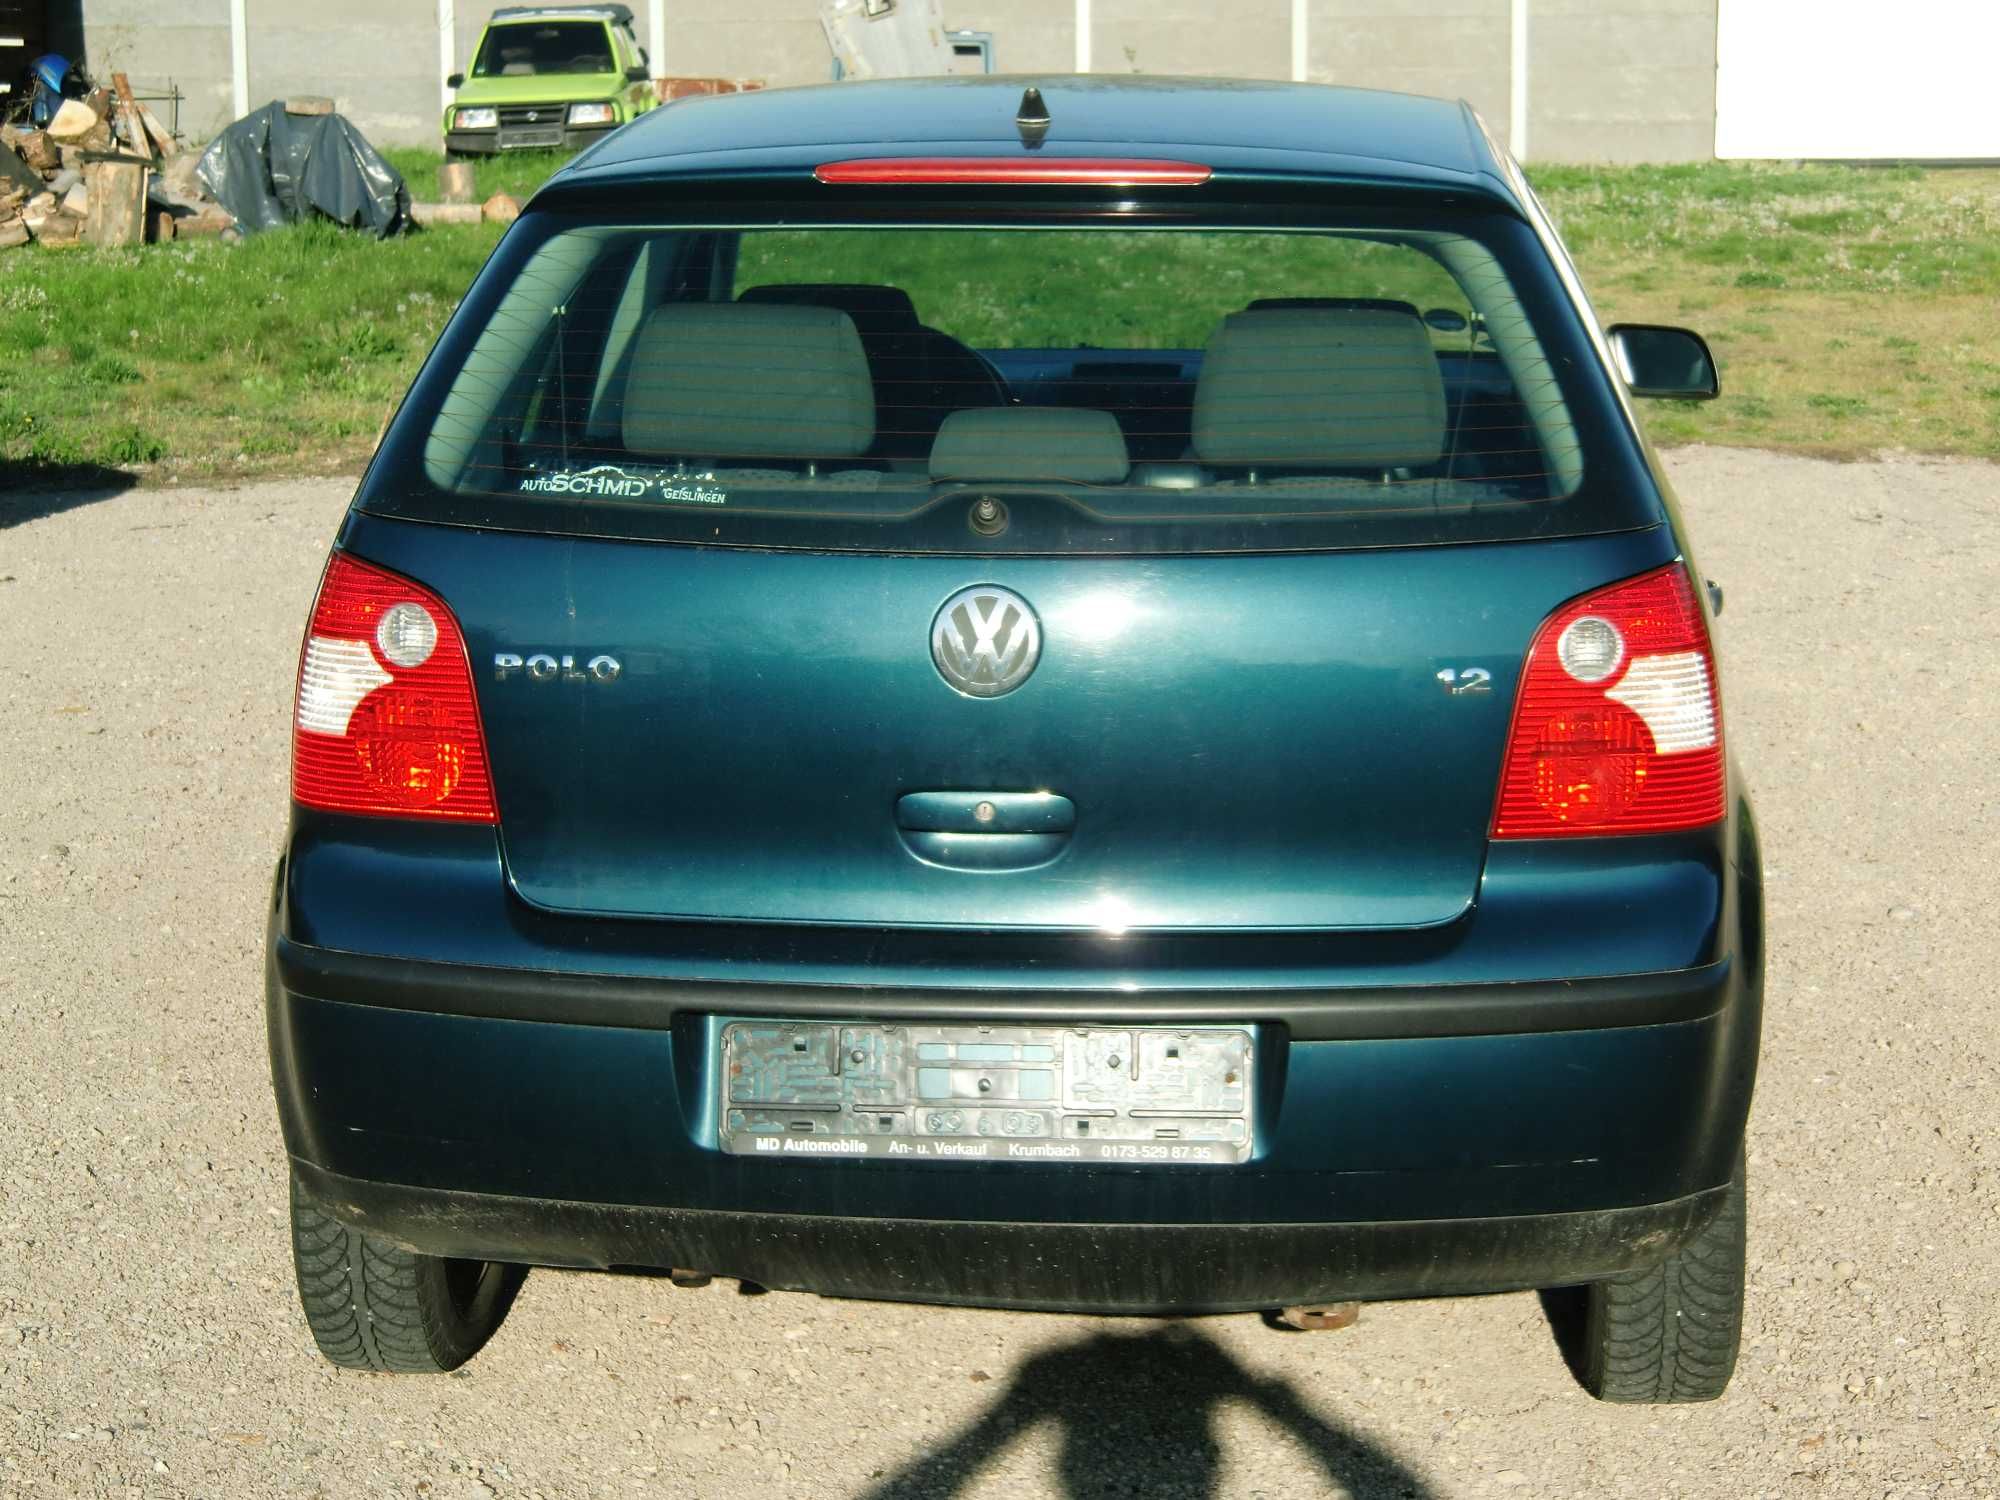 Volkswagen POLO  am 2003 1,2 benzina